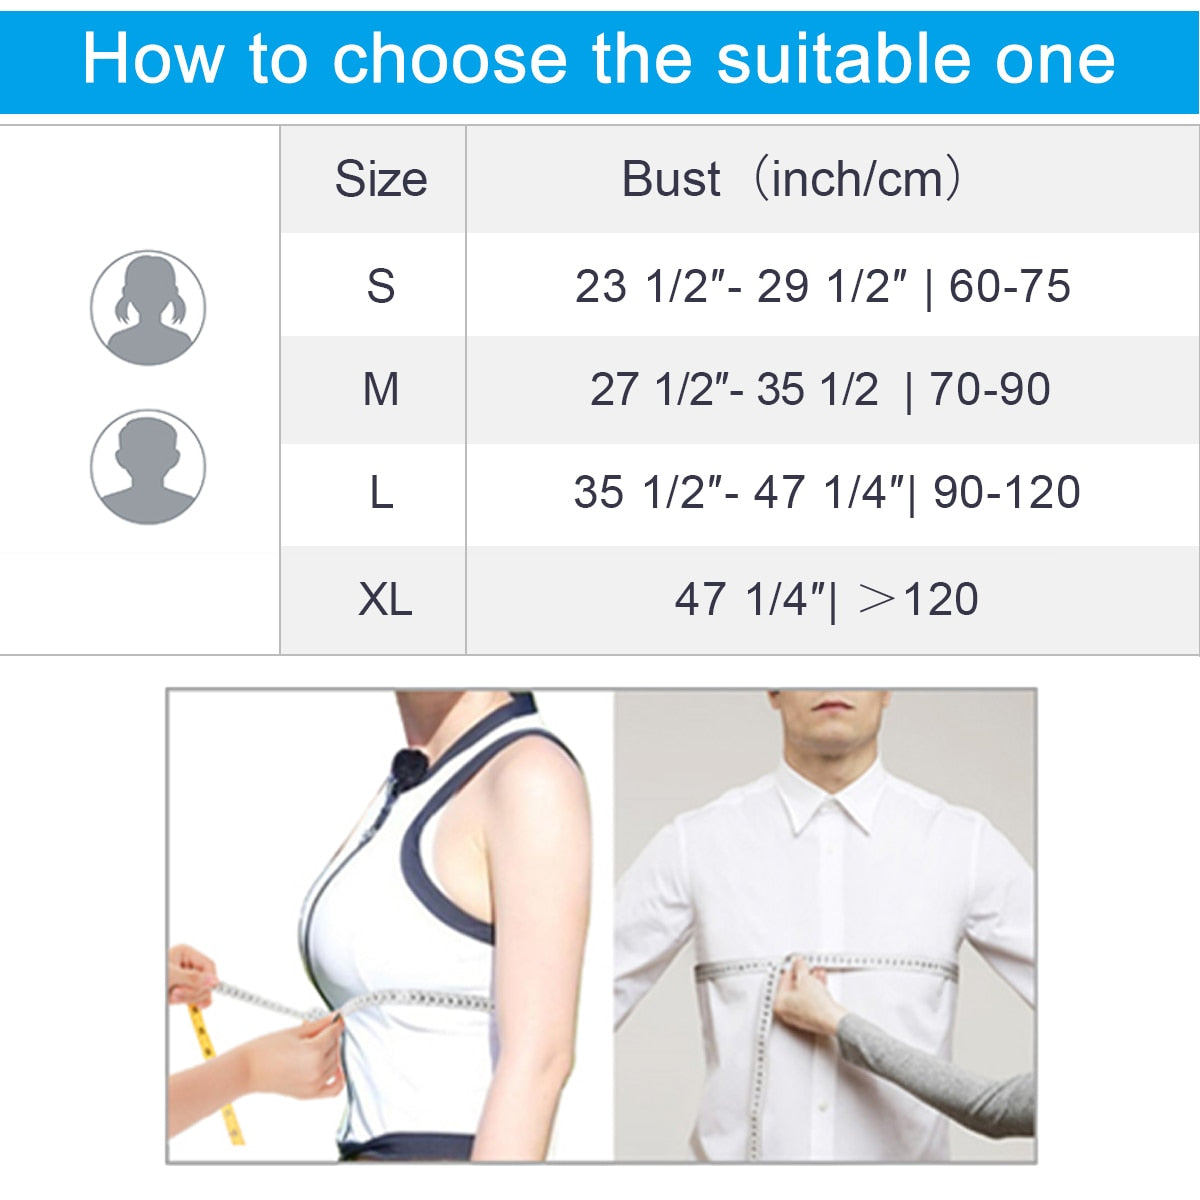 VELPEAU Shoulder Brace Support For Rotator Cuff Break, Shoulder Arthritis Arm Sling Immobilizer